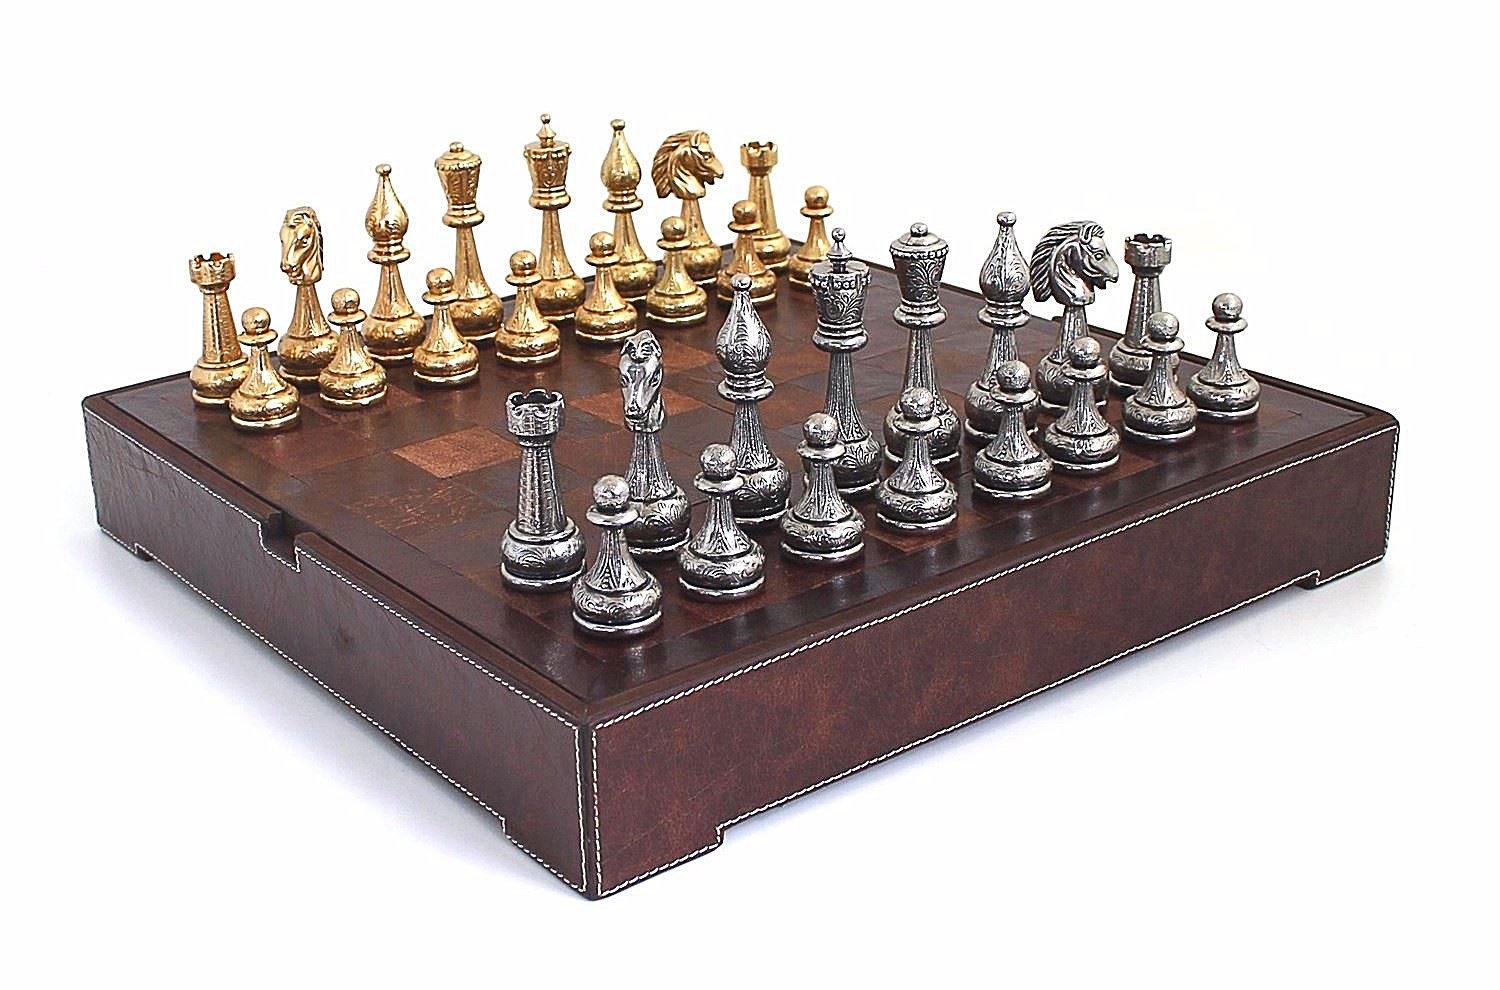 Schachensemble „Flowered“ Schachbrett aus echtem Leder und Schachfiguren aus Metall Massiv Gold-/Silberbeschichtung